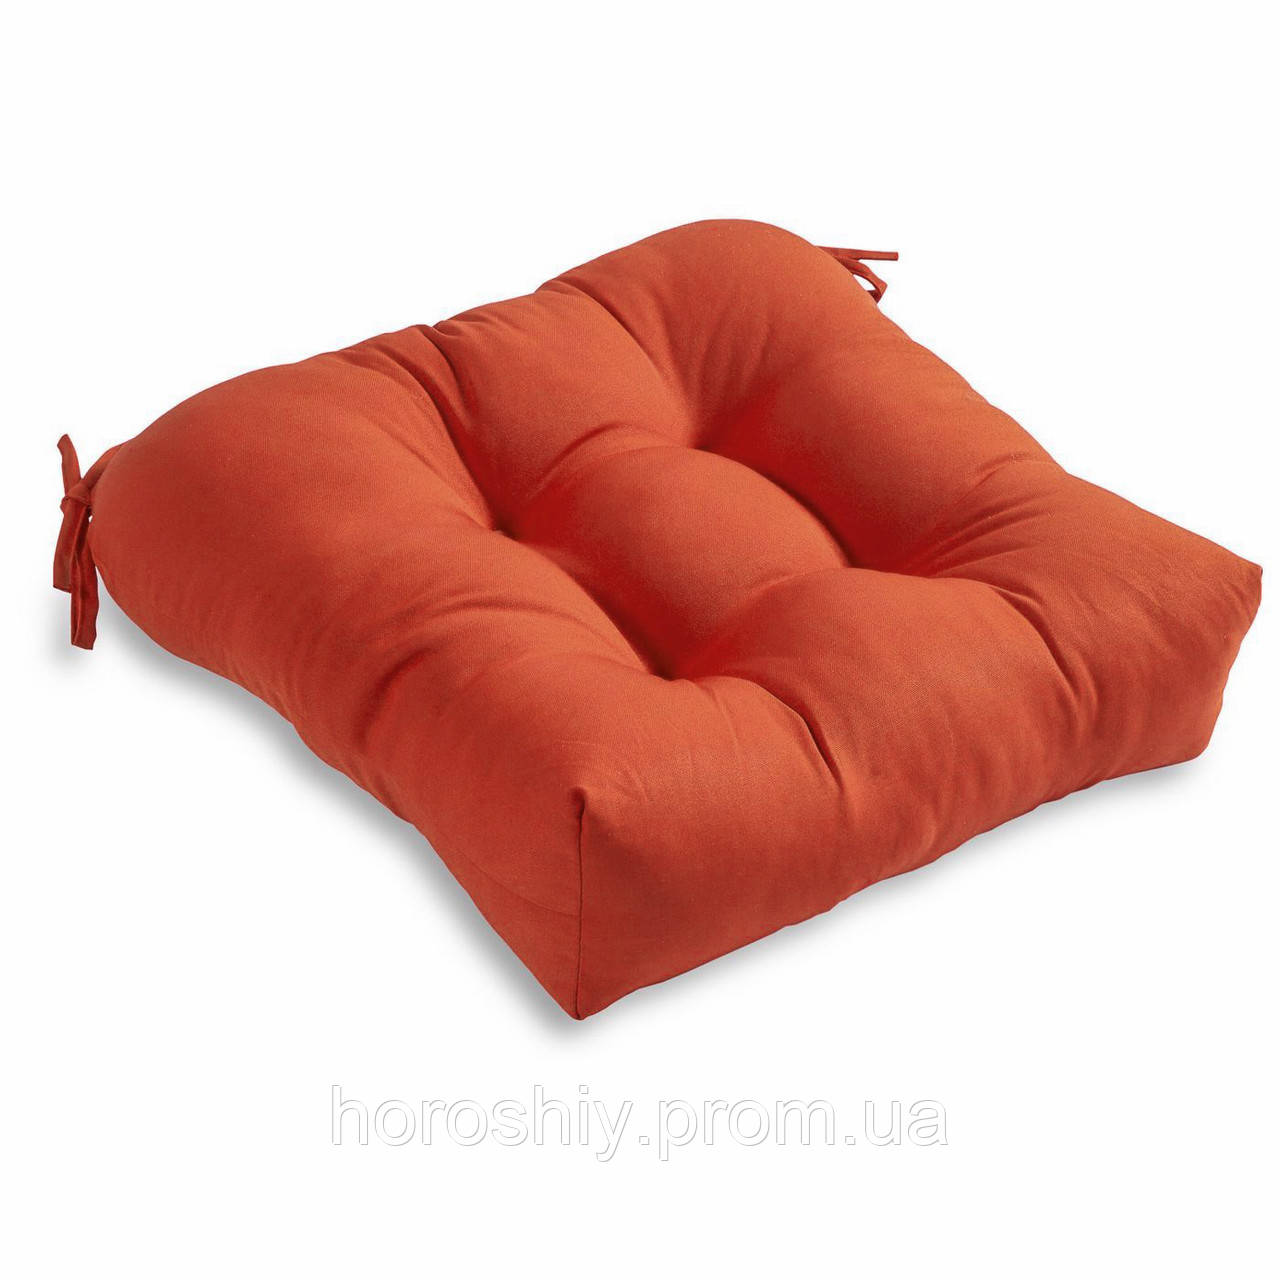 Уличная подушка сиденье для садовой мебели из холлофайбера 45х45 х10 Дралон ткань Кирпичный